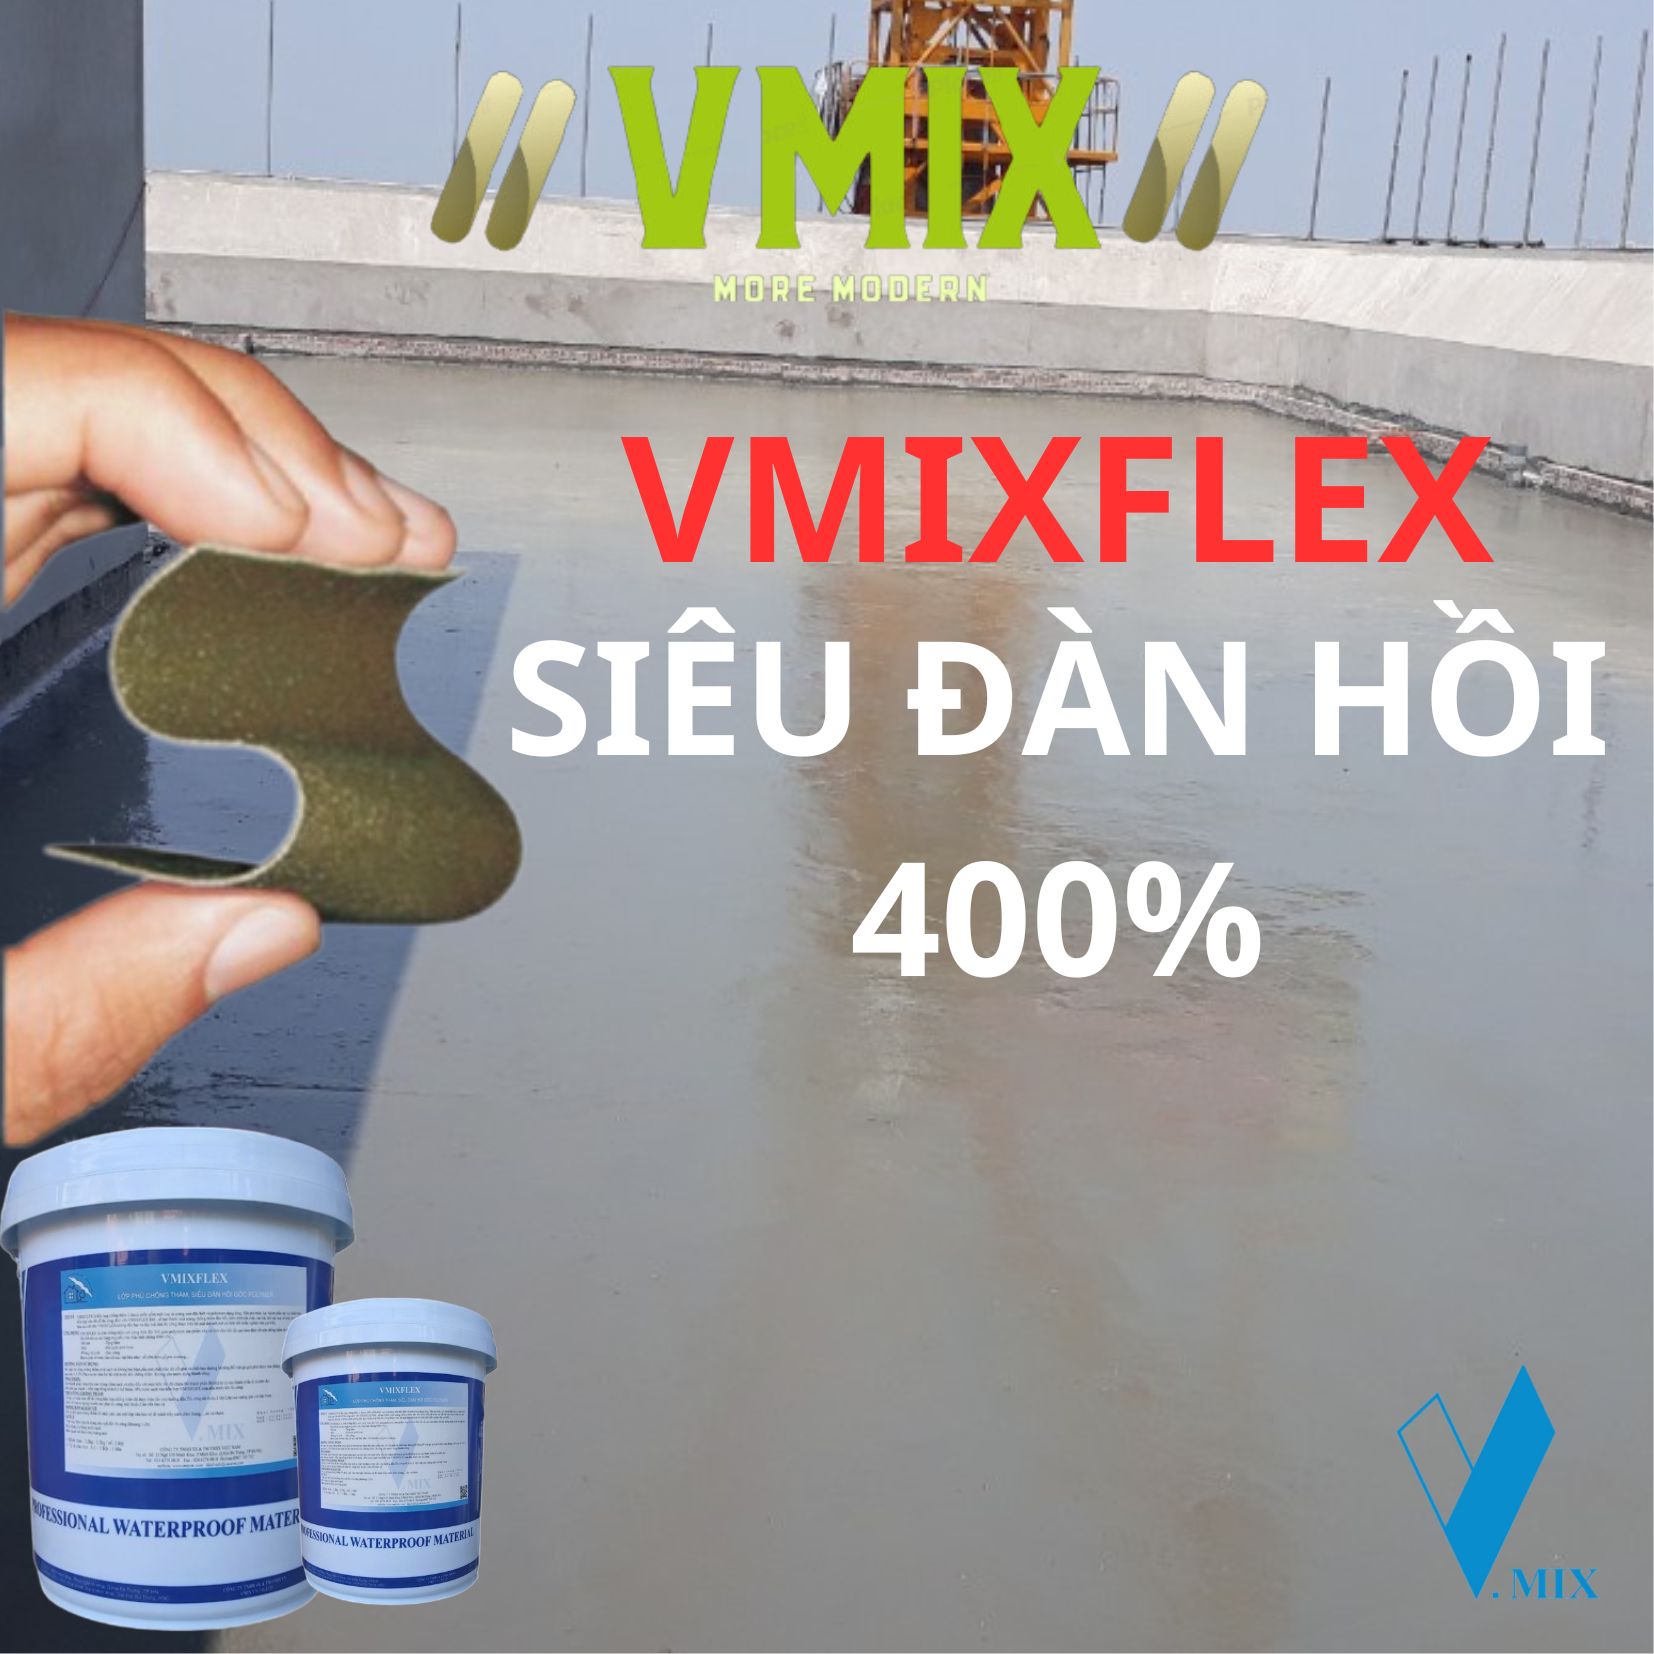 Chống thấm xi măng 2 thành phần siêu đàn hồi VMIXFLEX ,tỉ lệ pha trộn 1:1 ,chuyên dùng cho bể nước sinh hoạt không độc hại,dùng cho sàn mái, ban công,bể bơi,vệ sinh,tầng hầm,bể cá koi.VMIX ECO